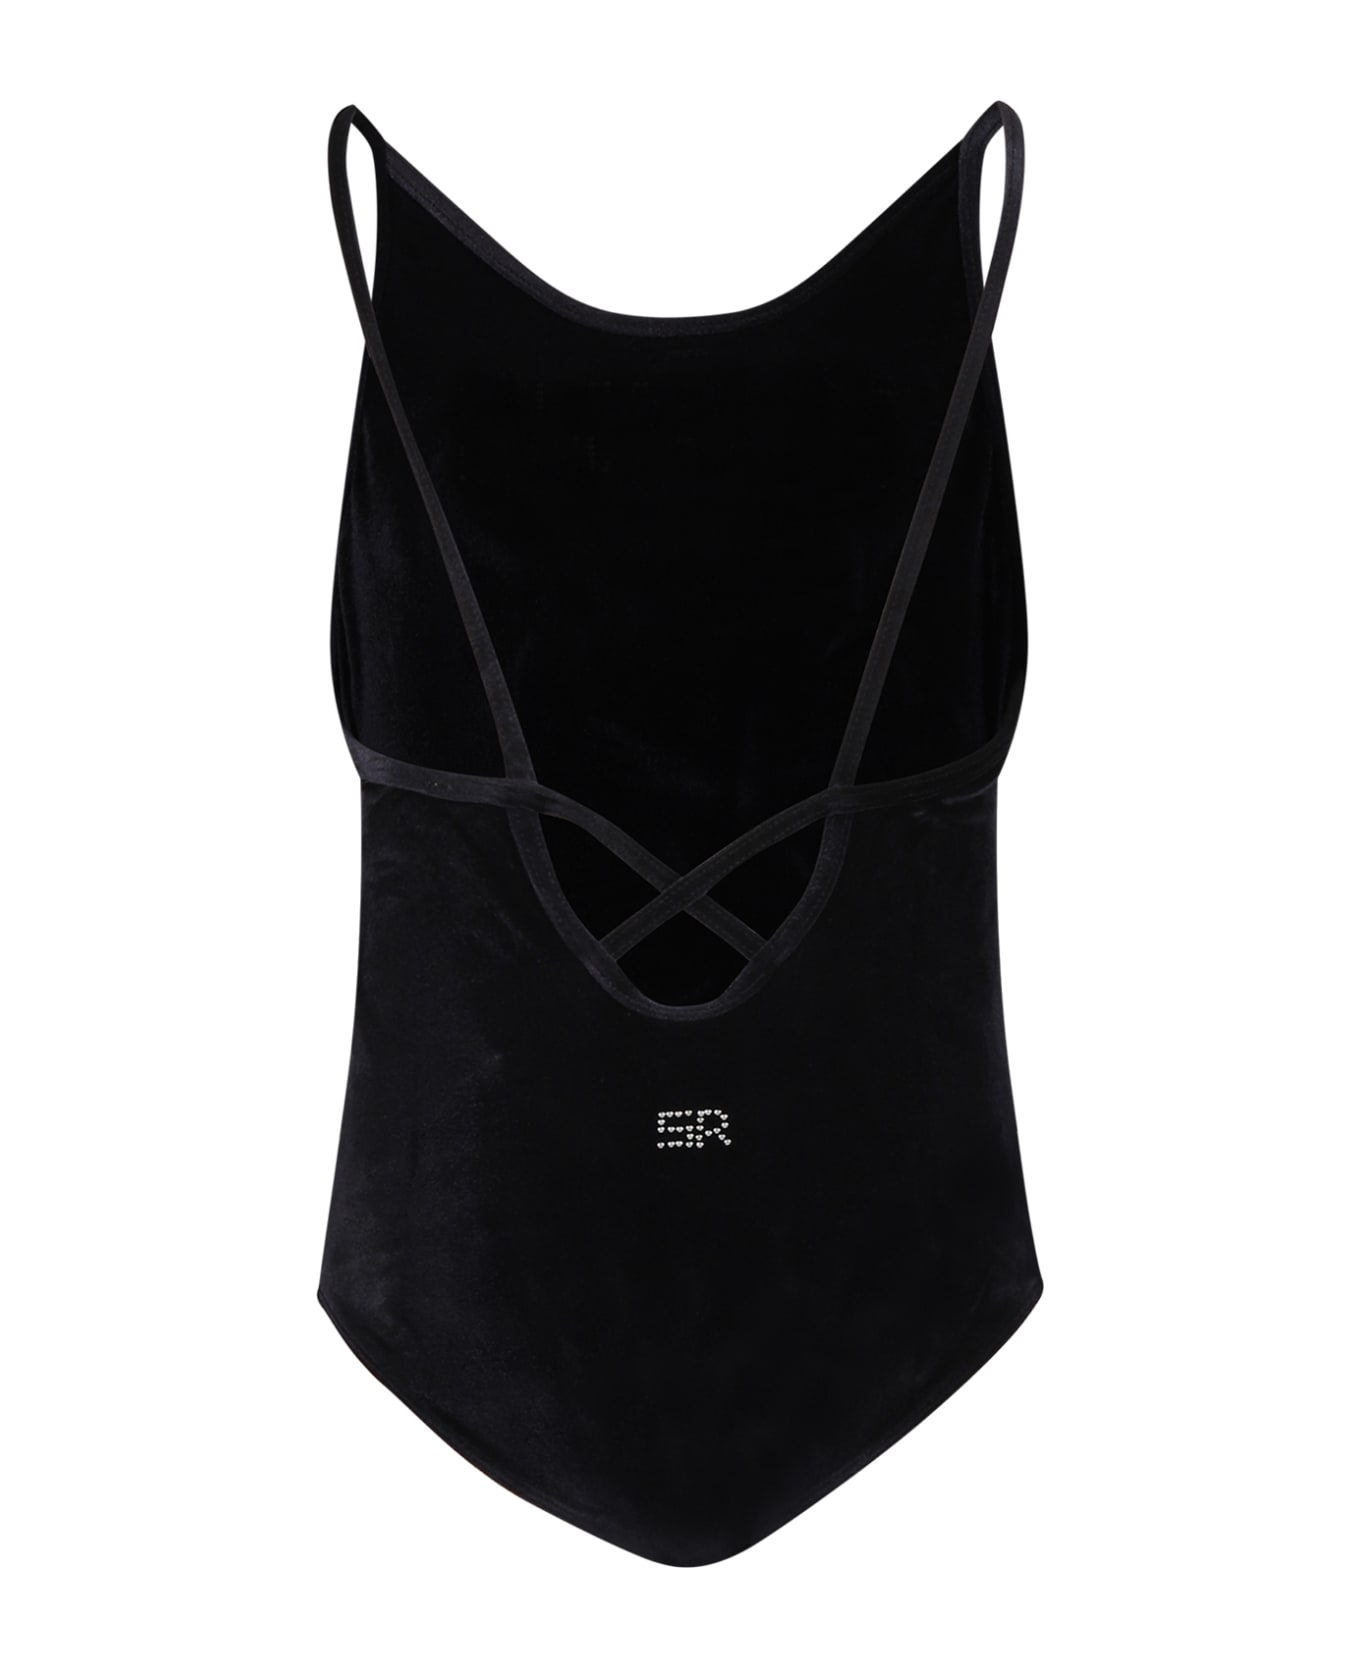 Rykiel Enfant Black Swimsuit For Girl With Logo - Black